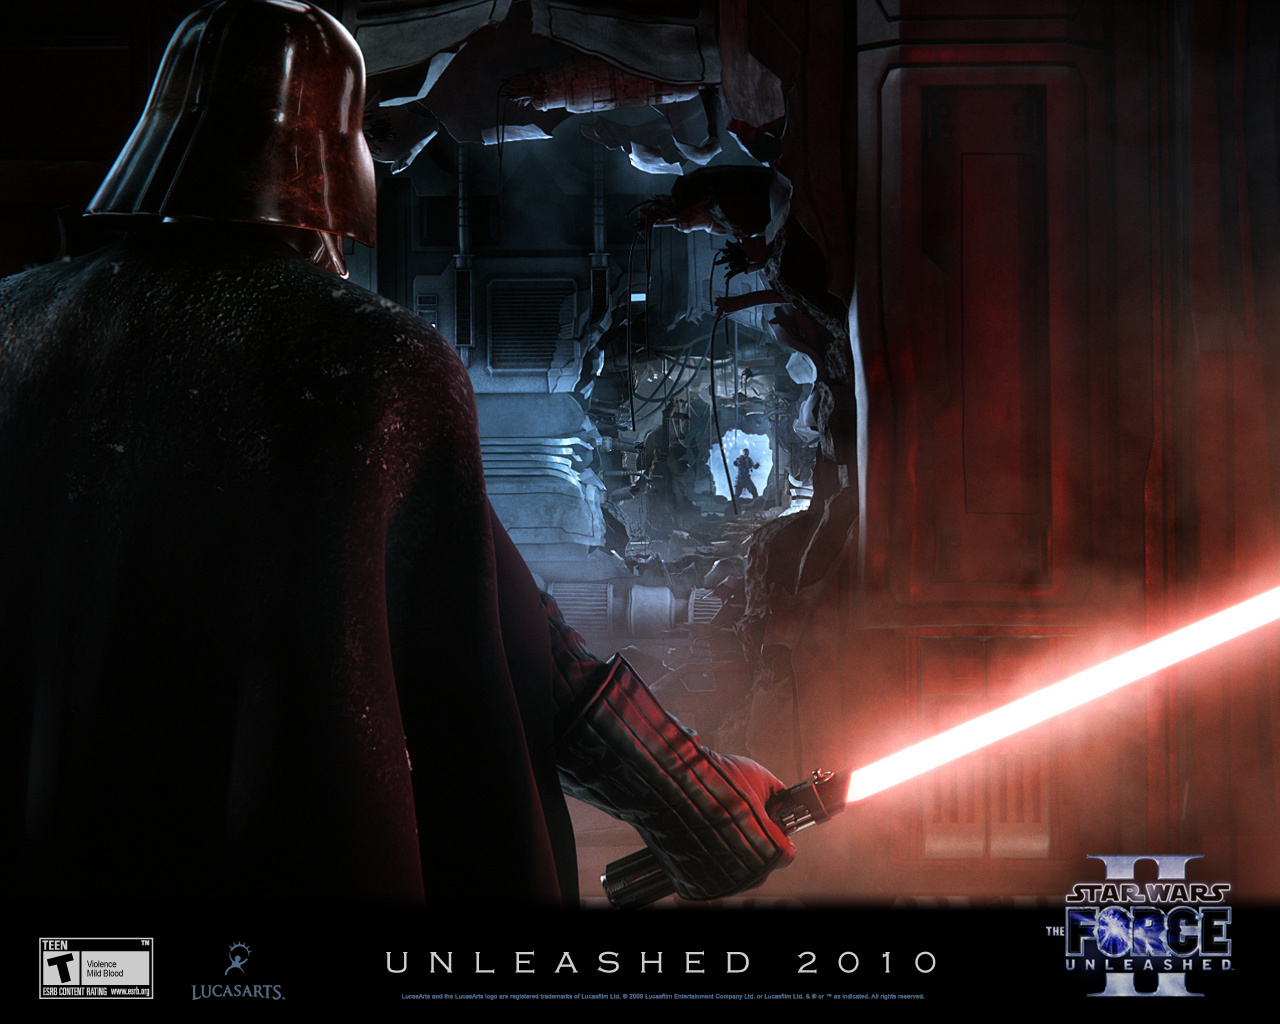 Force Unleashed 2 - Star Wars Wallpaper 17136944 - Fanpop